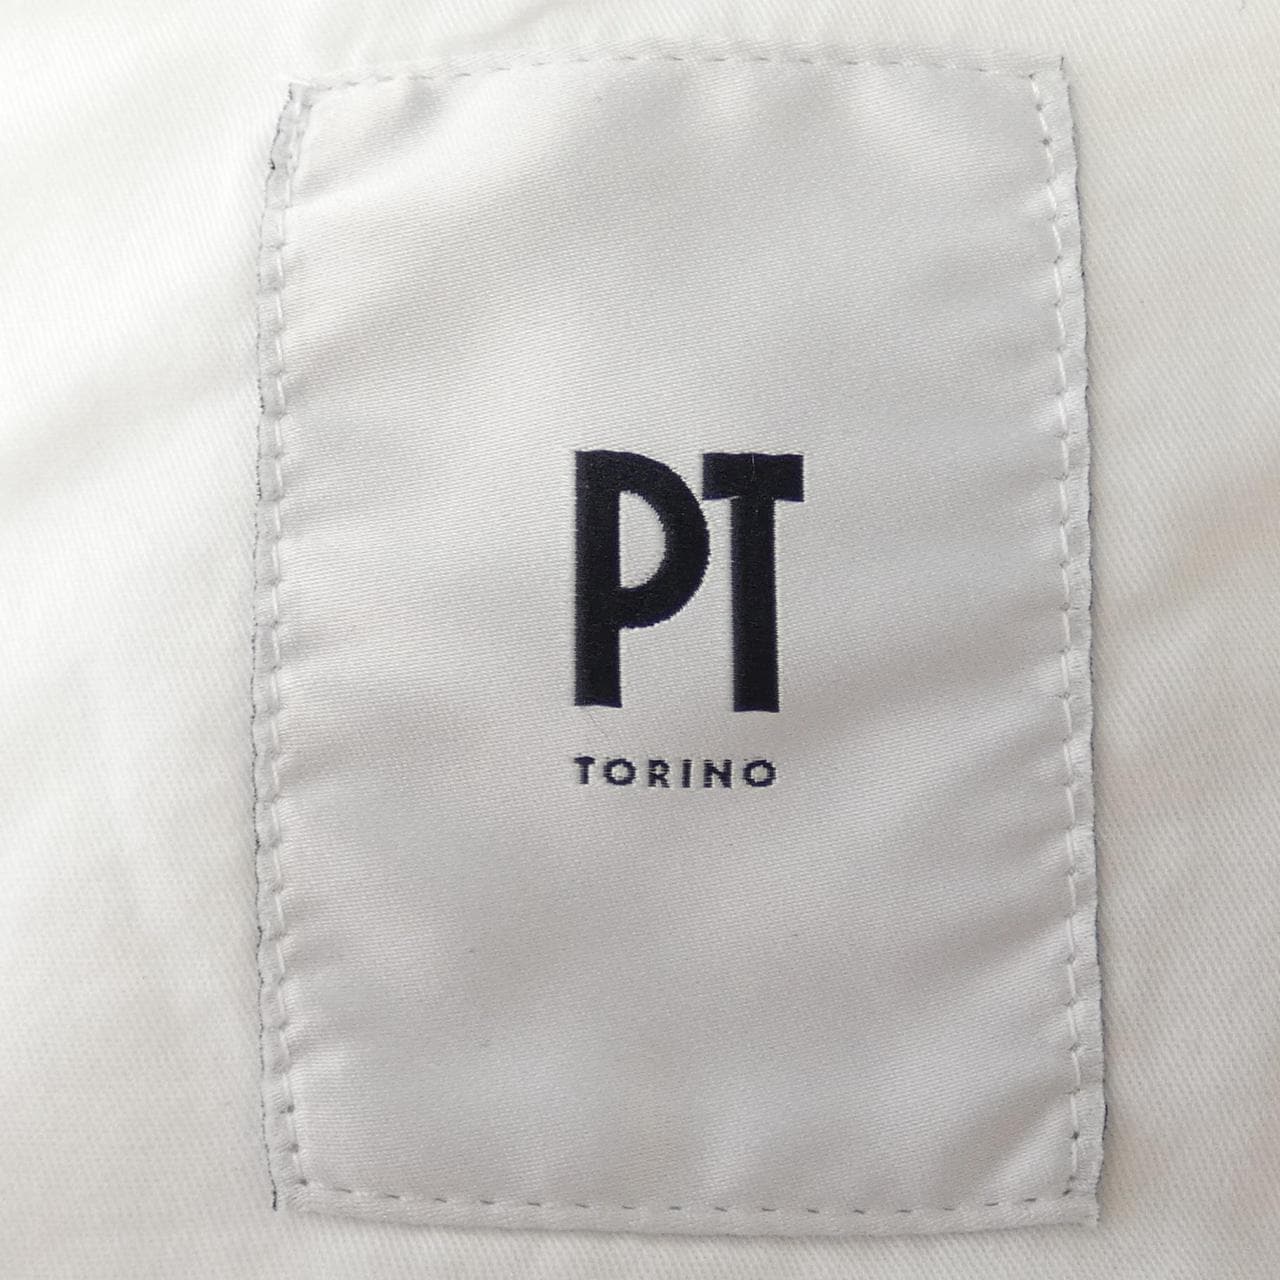 PETY TRINO PT TORINO短褲